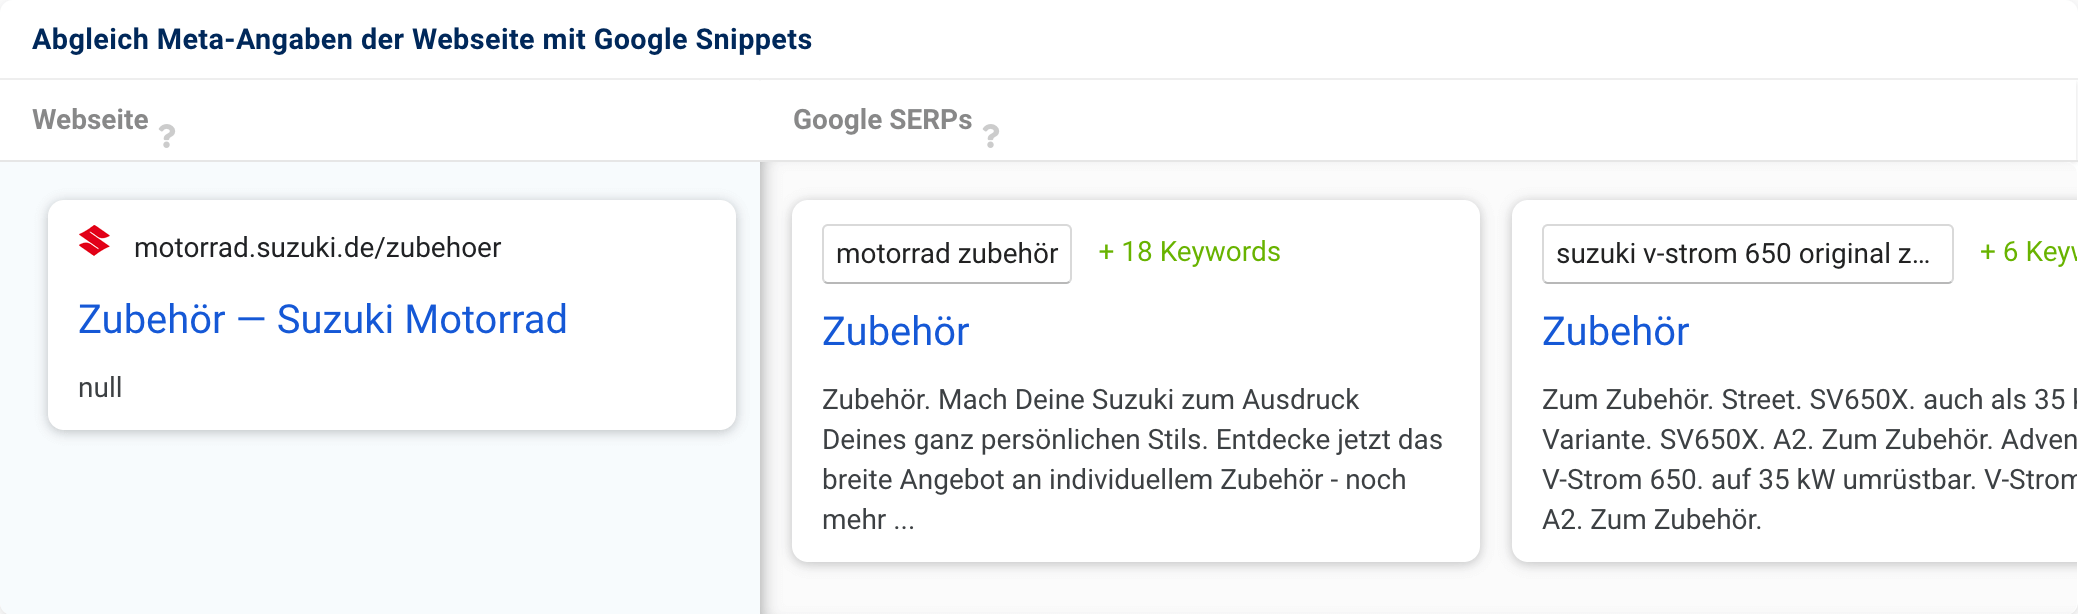 Die Domain sizuki.de hat für ihre Motorrad-Zubehör-Seite die Überschrift #Zubehör-Suzuki Motorrad angegeben und als Description bloß das Wort #null. Letztere hat Google mit einem guten Textausschnitt angepasst, der Titel ist aber nur noch #Zubehör.